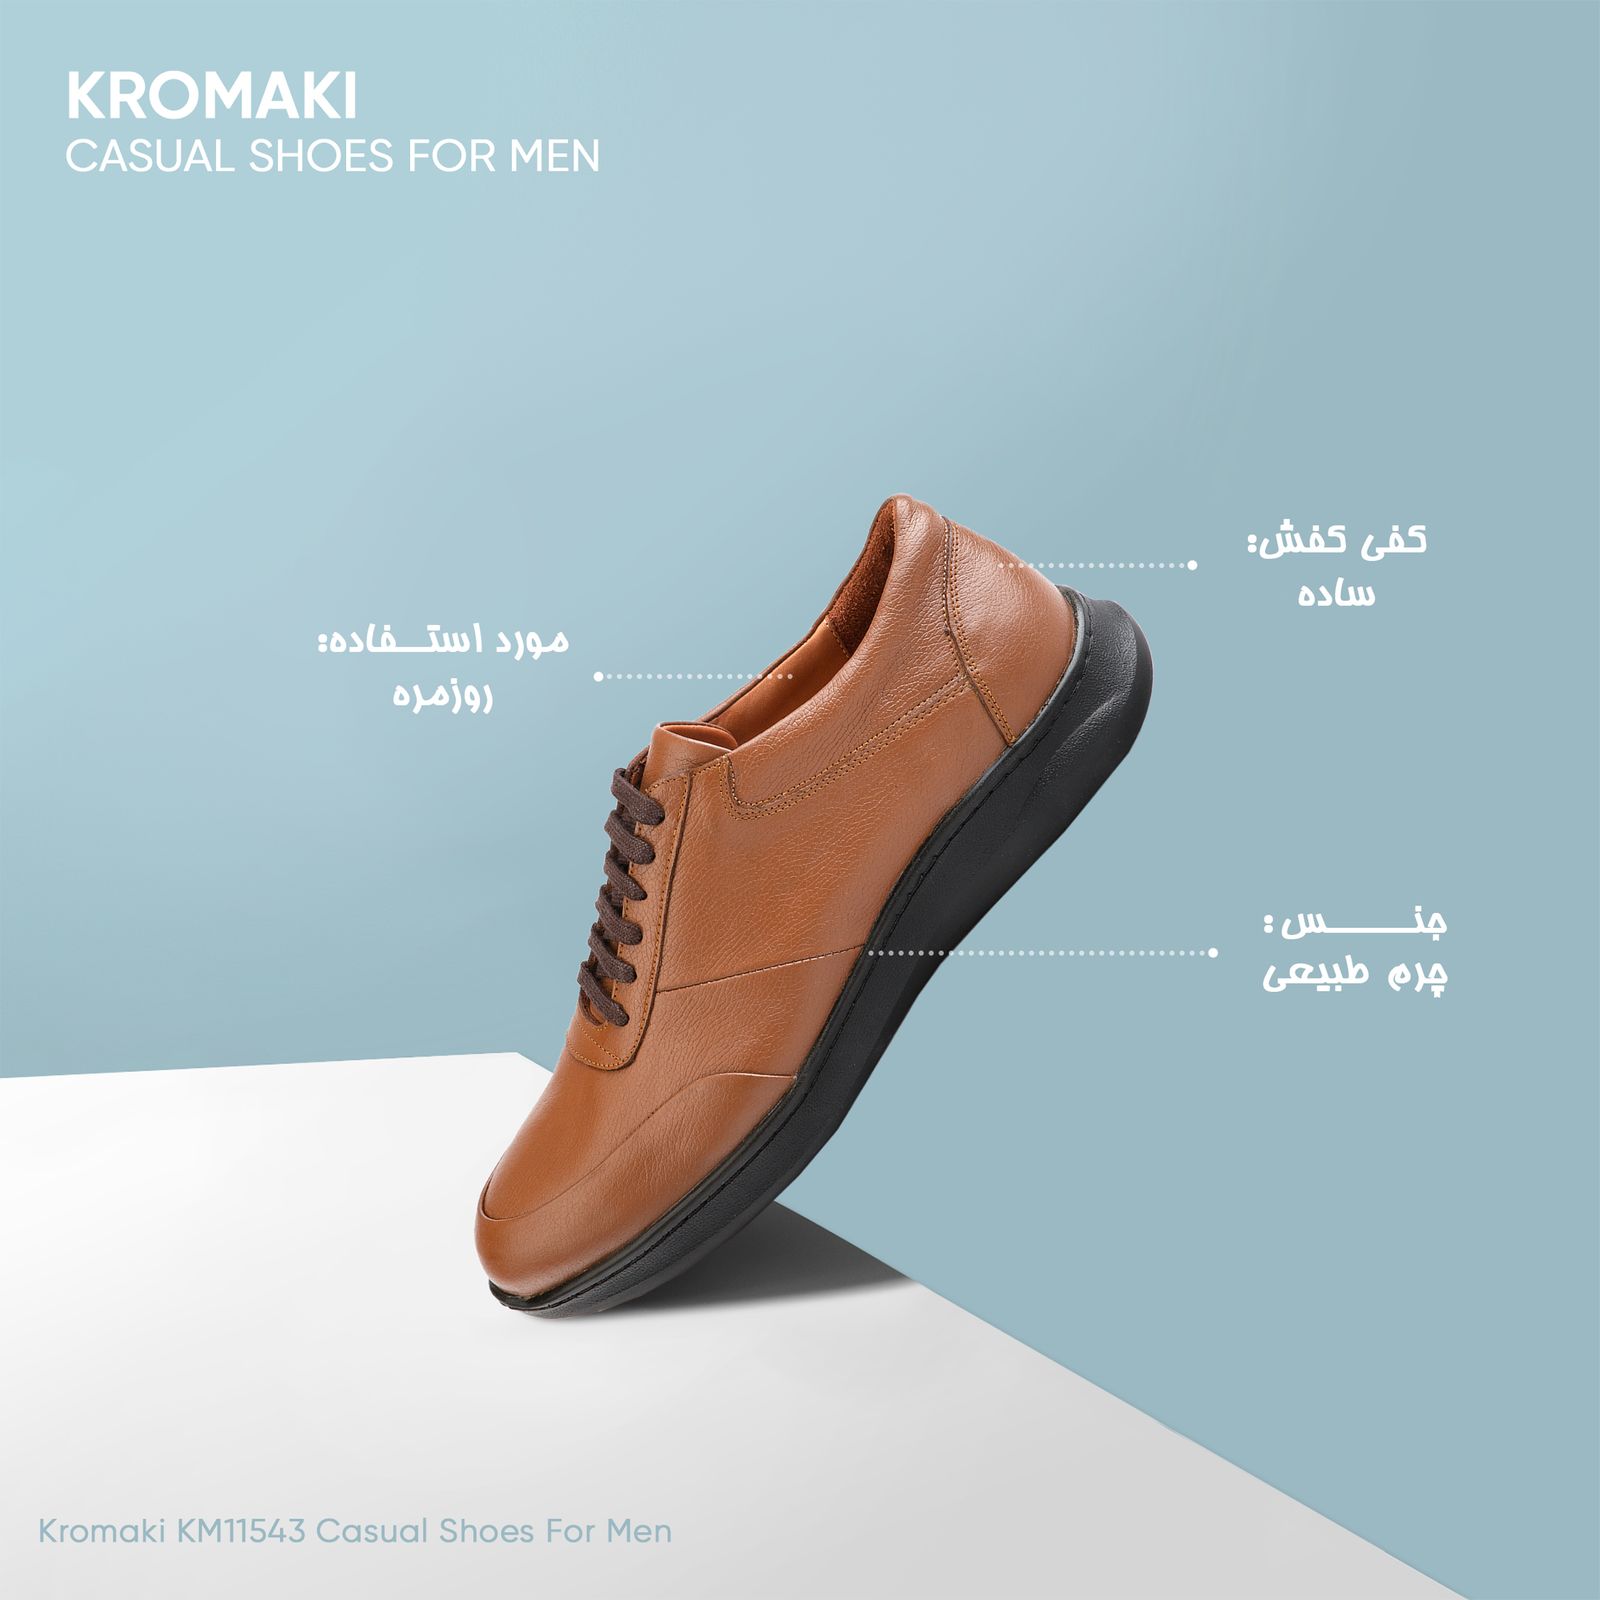 کفش روزمره مردانه کروماکی مدل KM11543 -  - 7